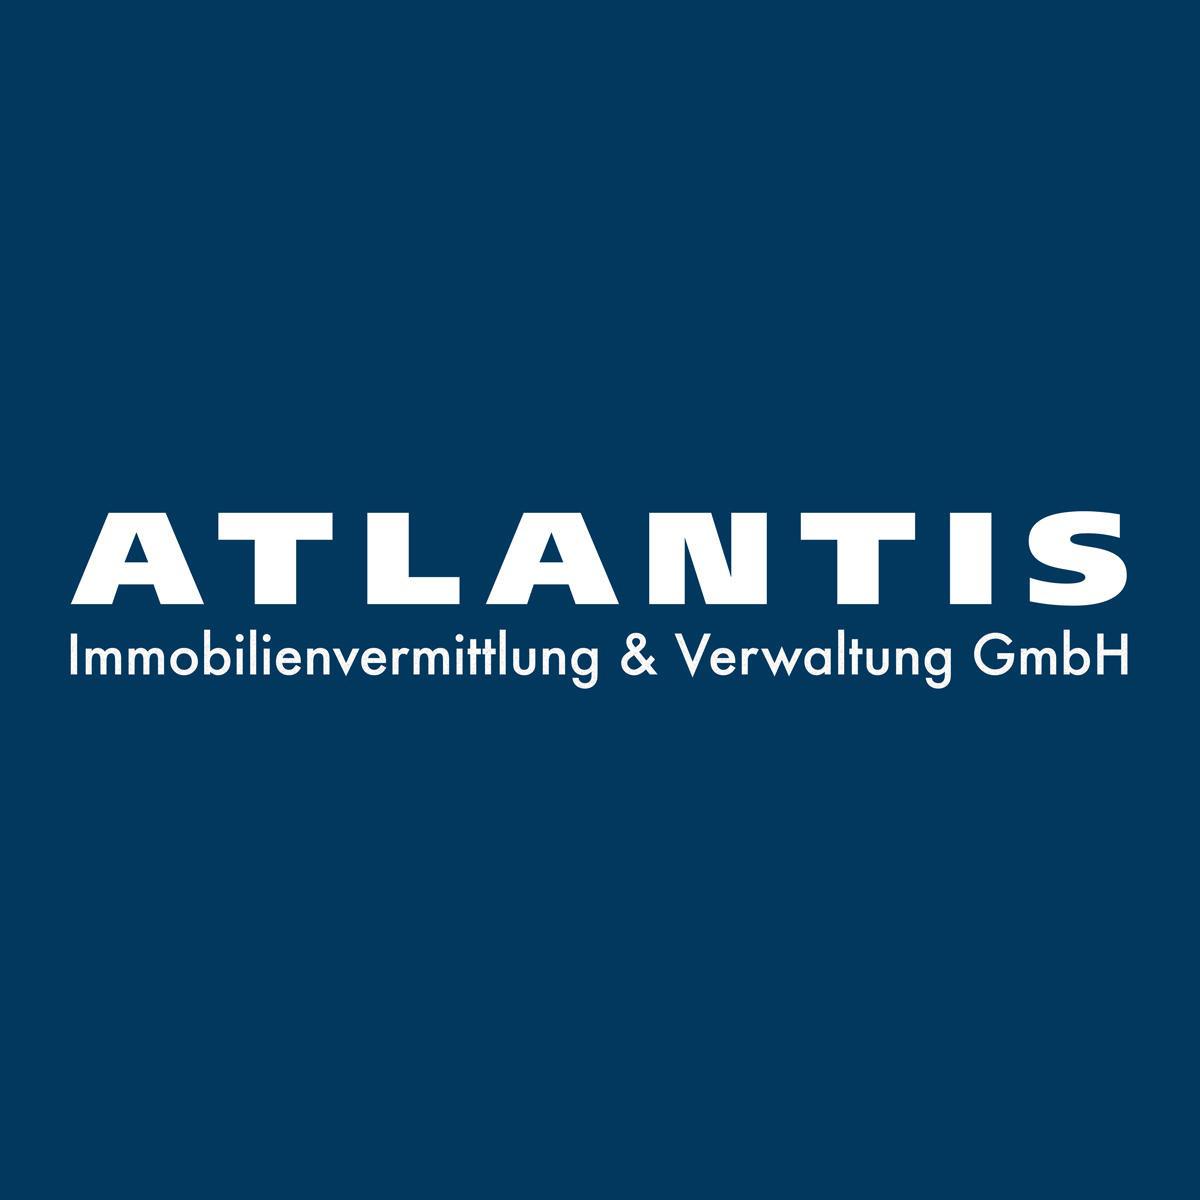 ATLANTIS Immobilienvermittlung & Verwaltung GmbH Hilden in Hilden - Logo